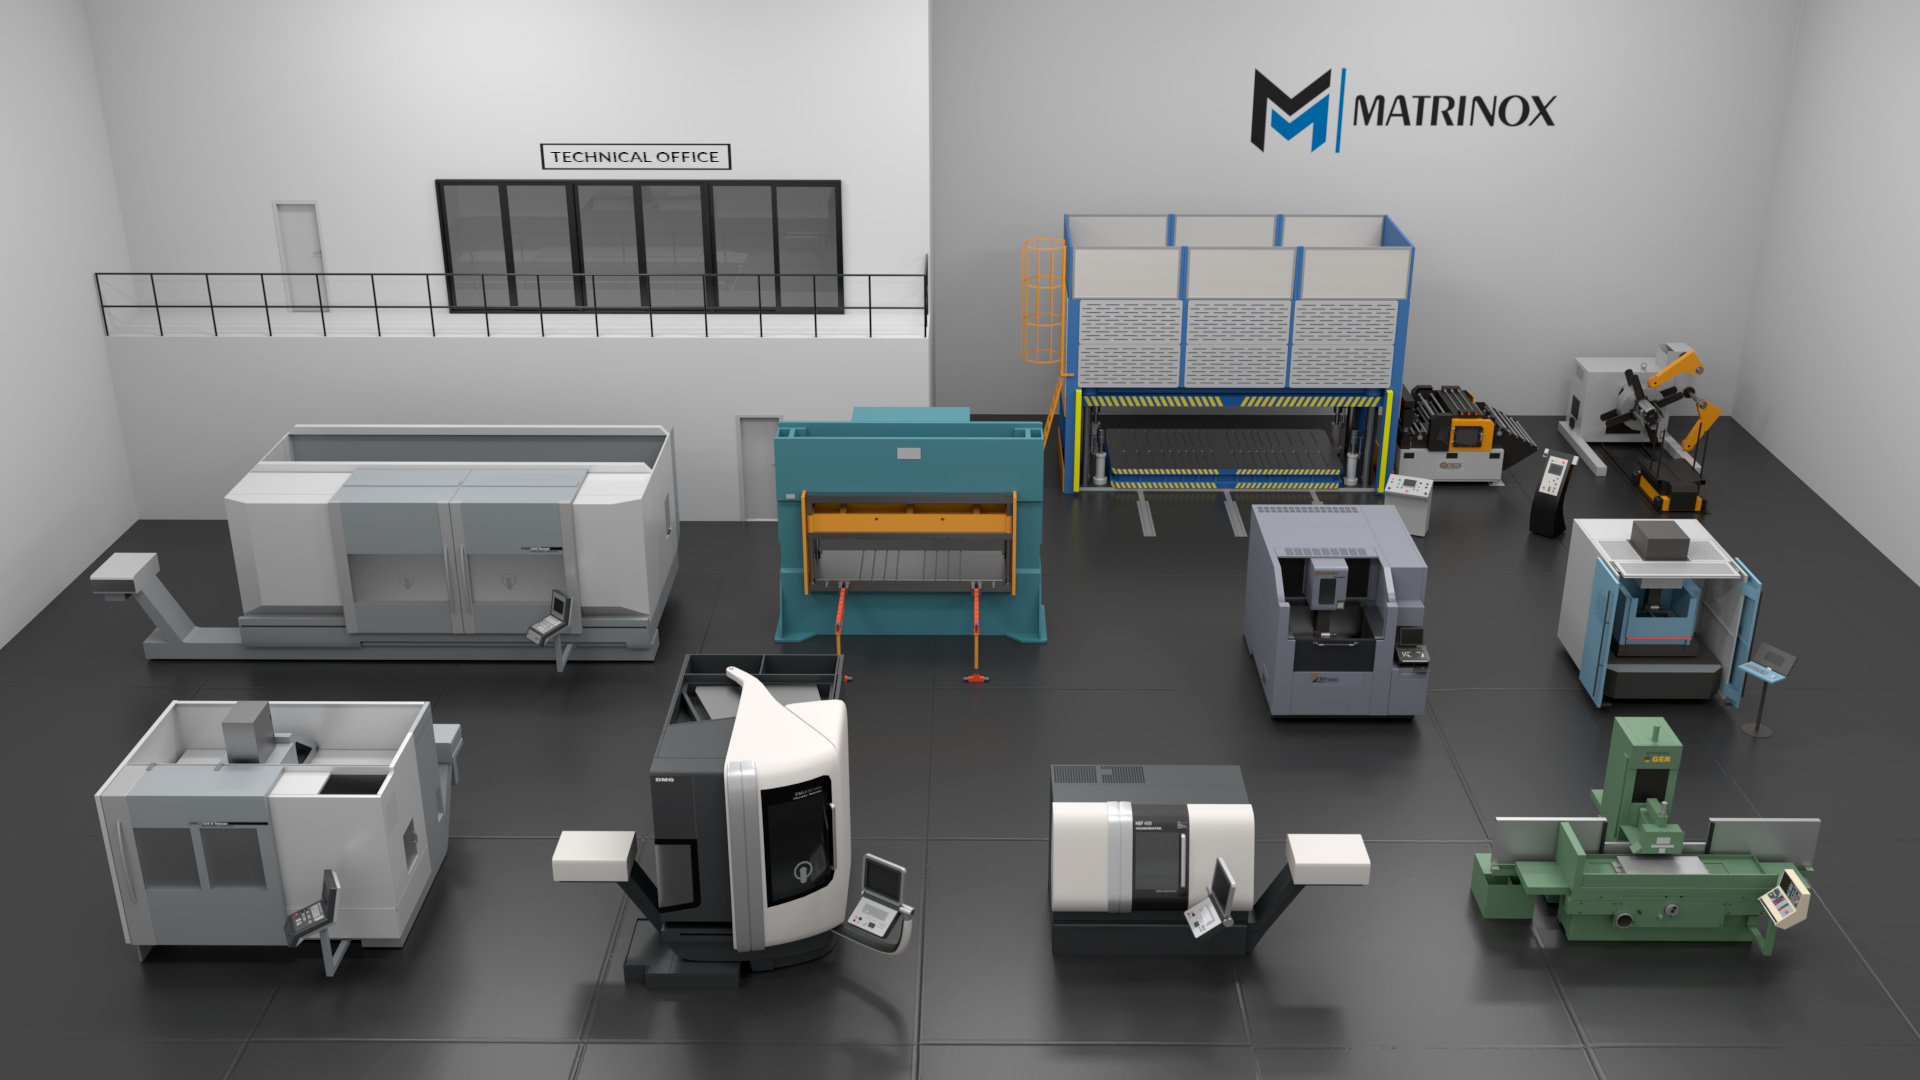 Matrinox Technology